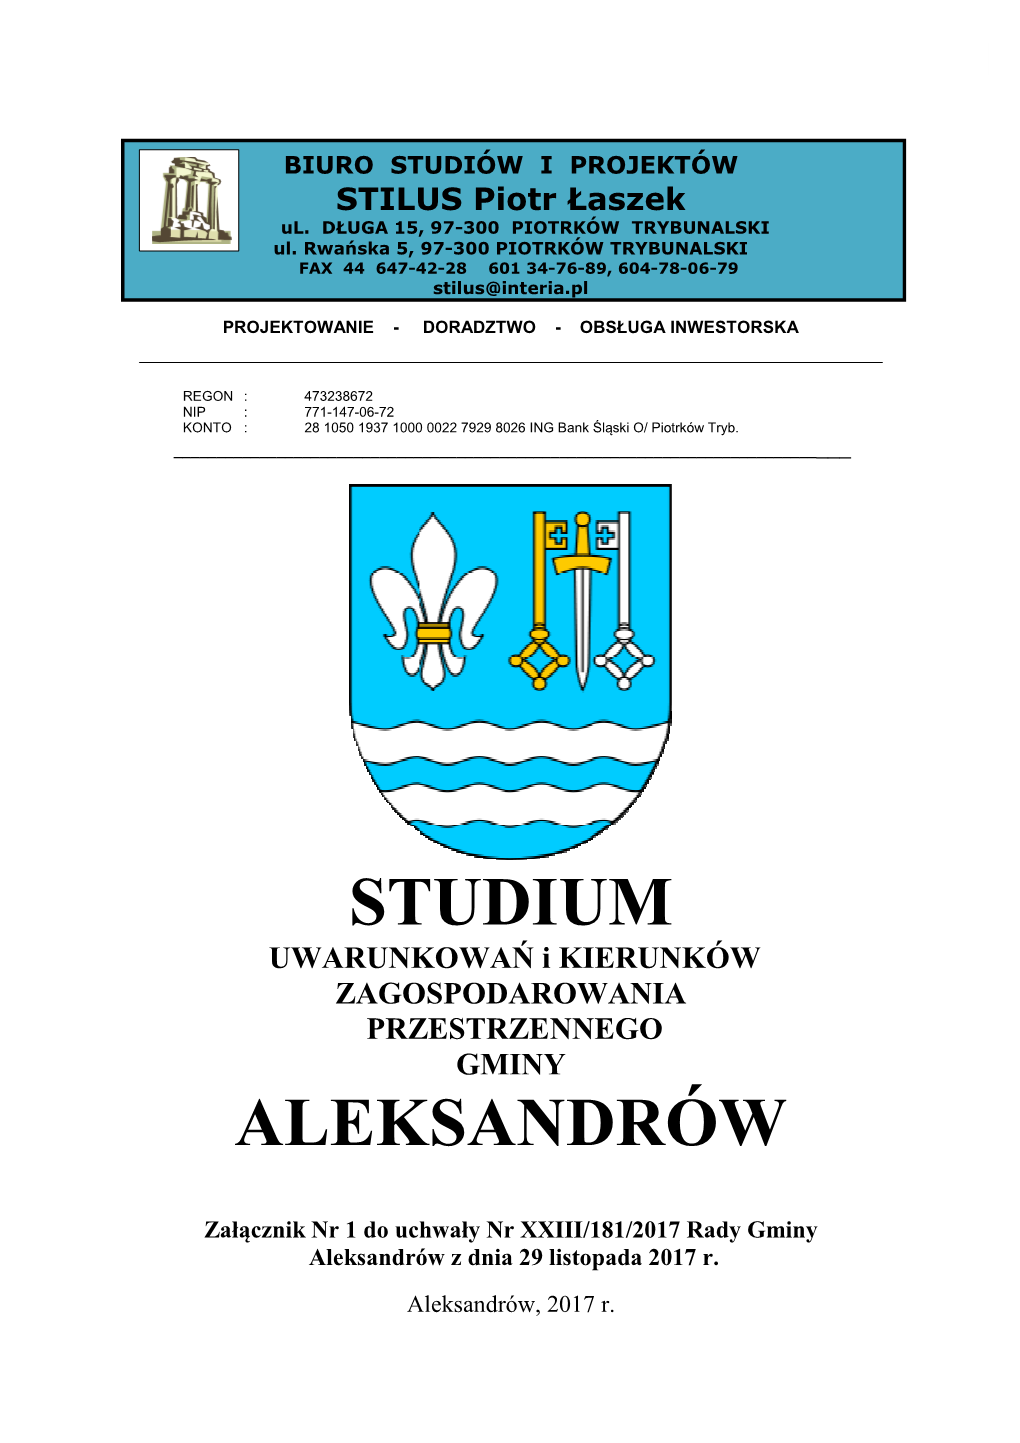 Studium Aleksandrów-Załącznik Nr 1 Do Uchwały-Projekt Wersja Do